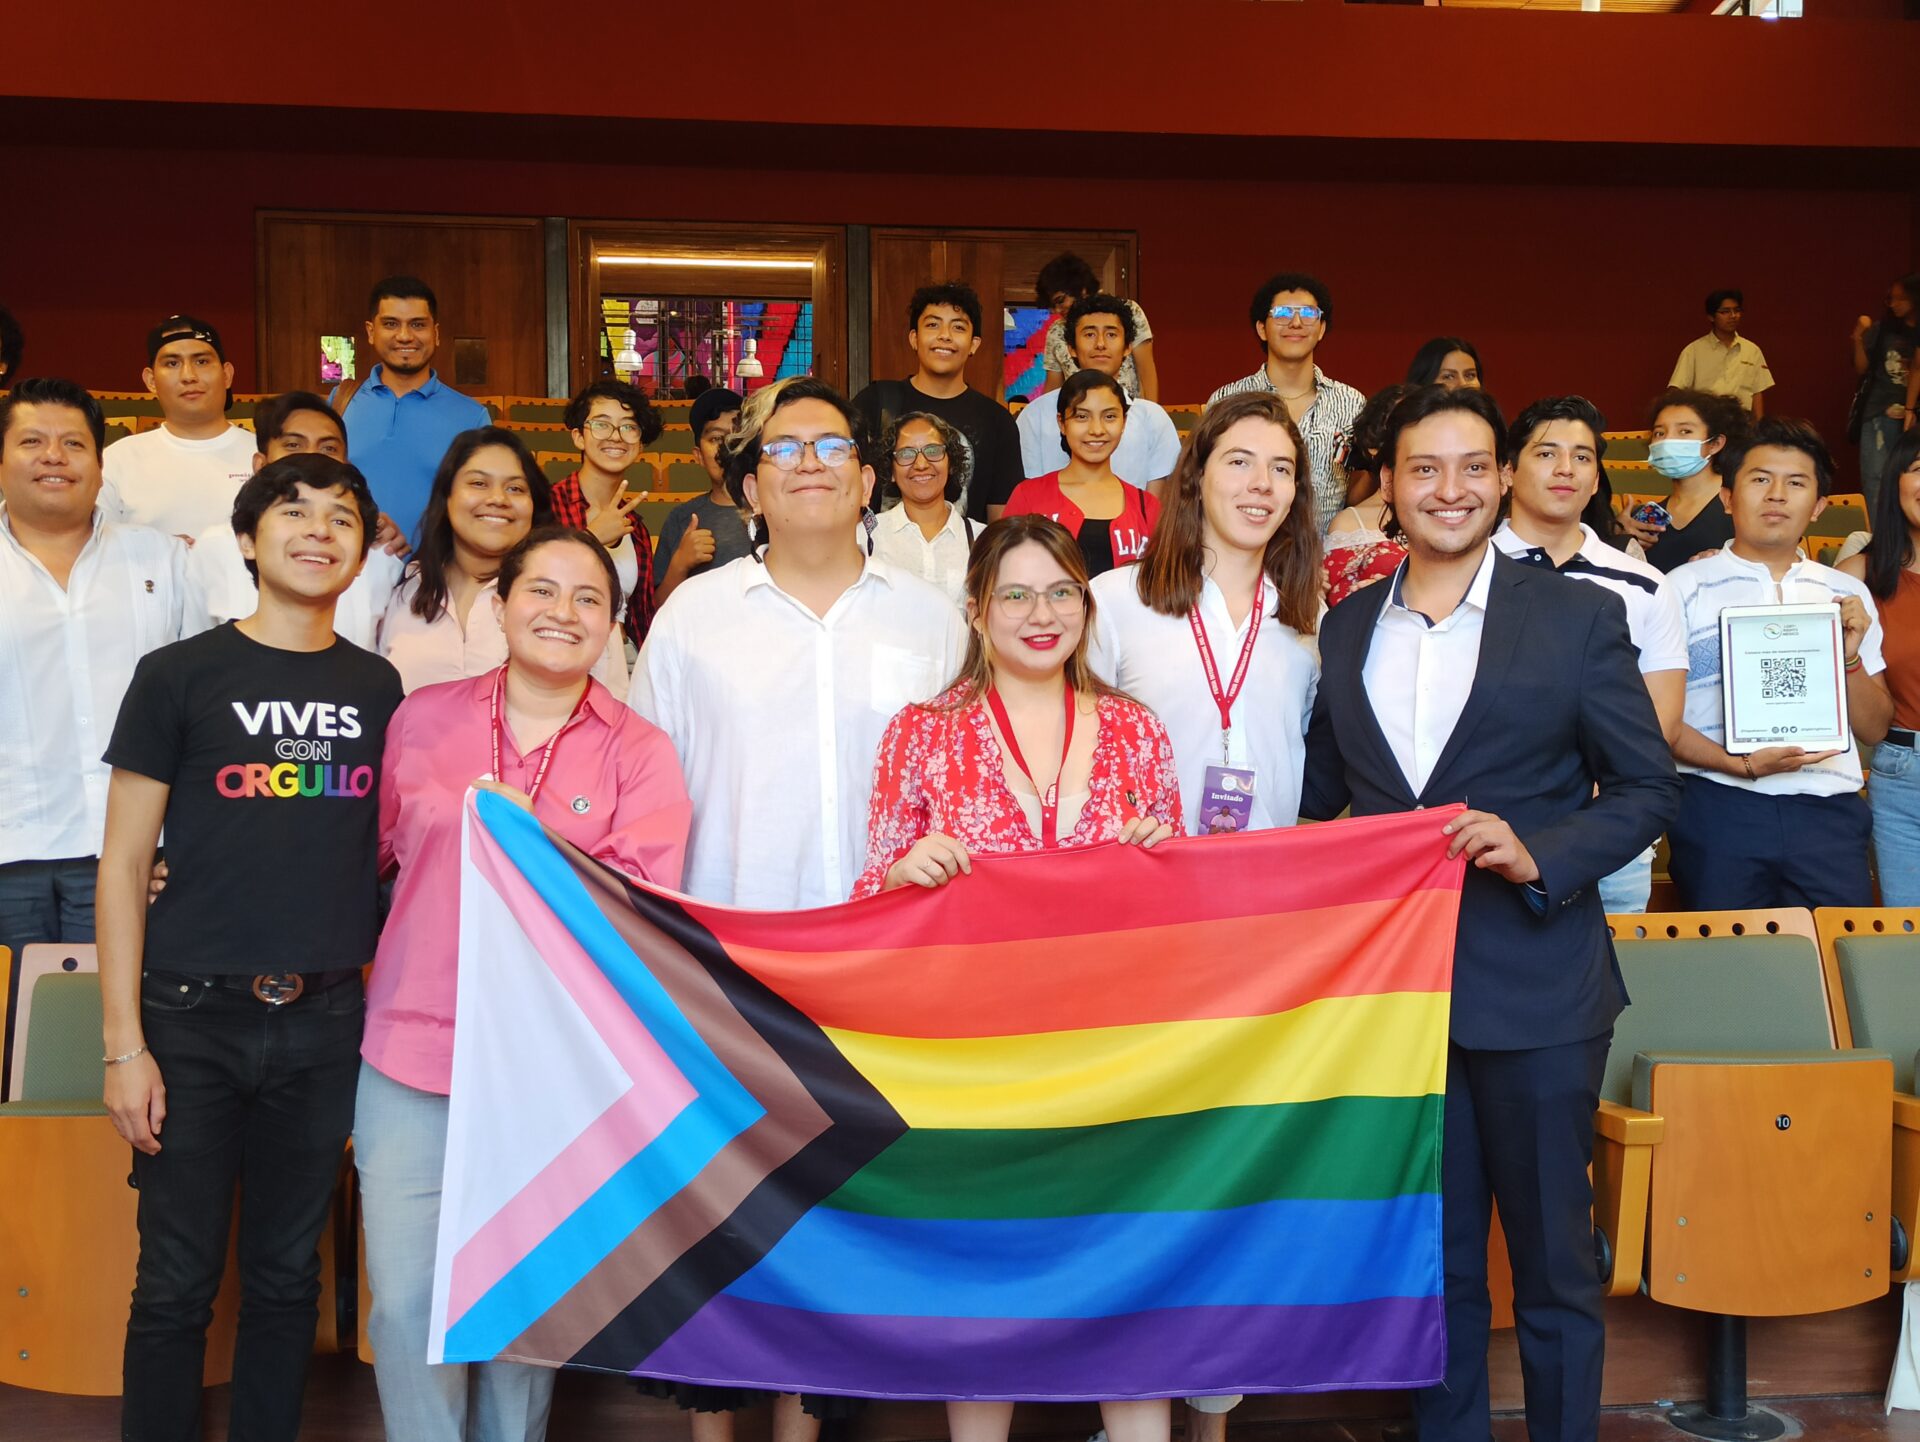 La feria del libro de Oaxaca abre espacios a la comunidad LGBT+